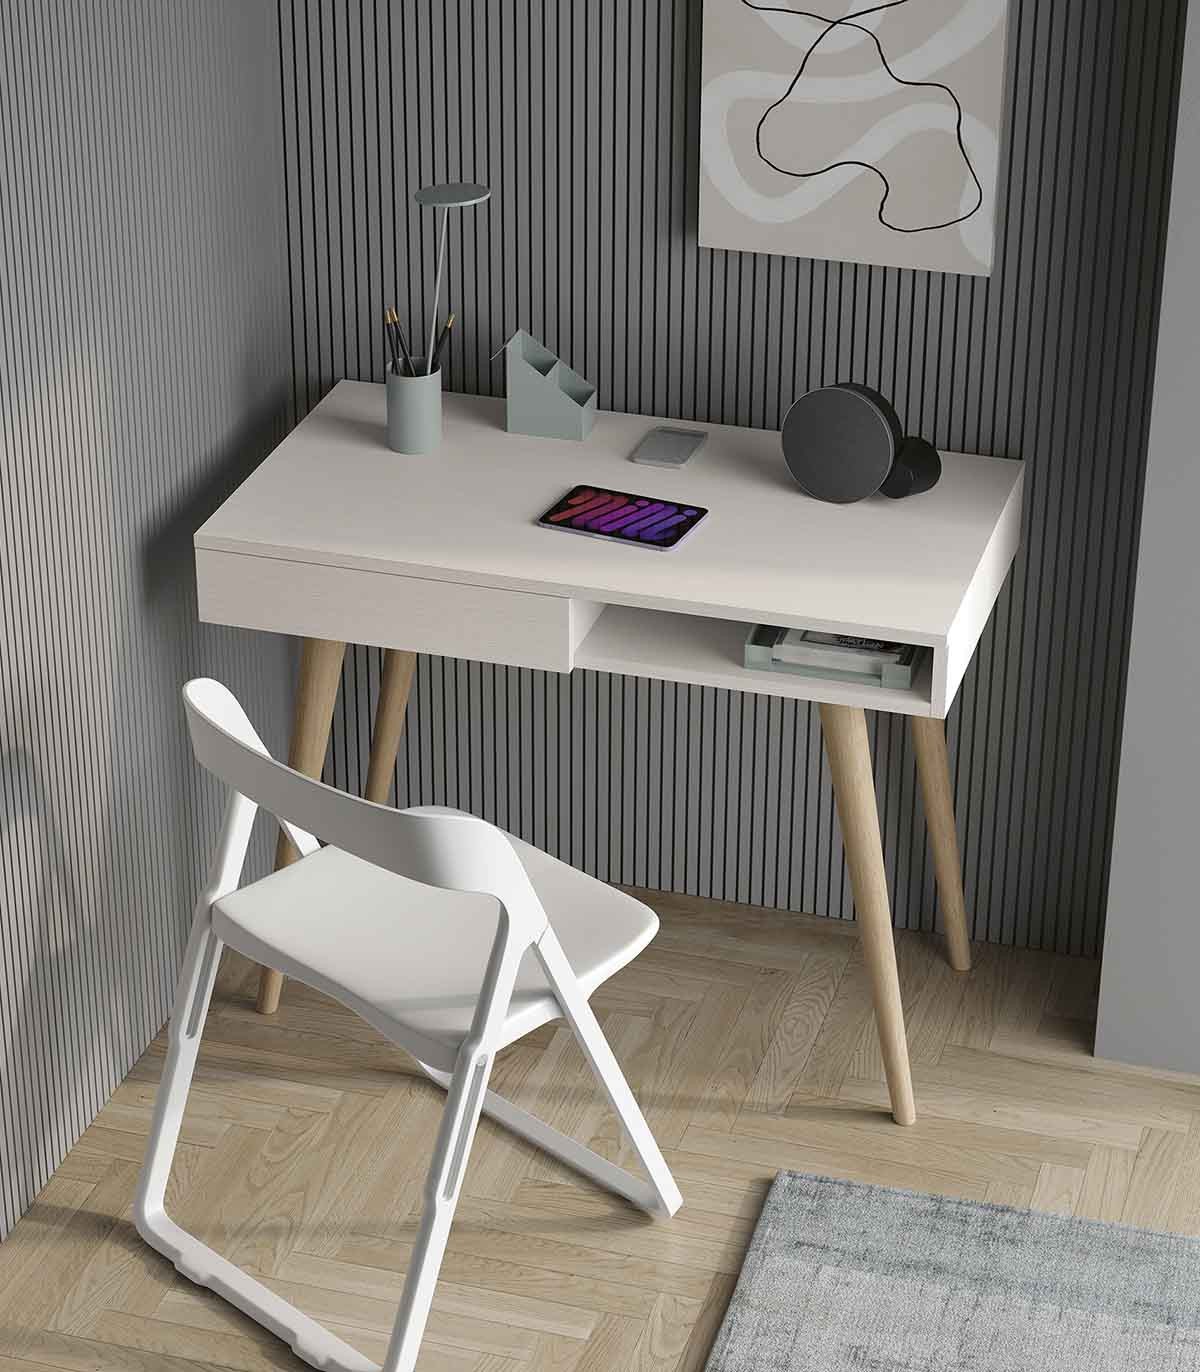 Muebles Modernos de diseño, Mesa escritorio lacado blanco